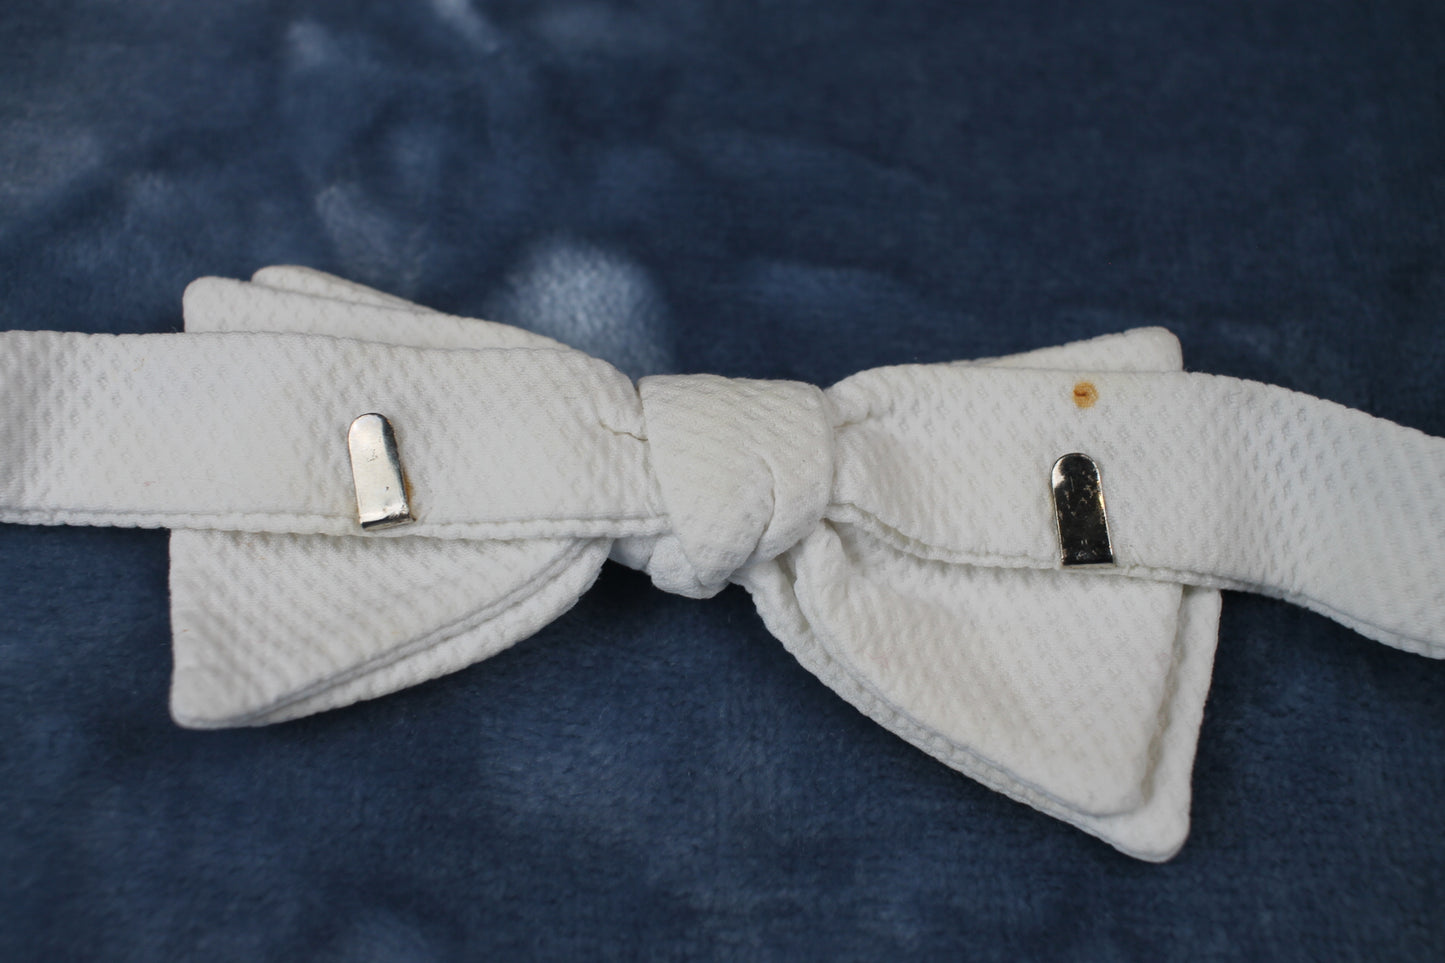 Vintage Ekco pre-tied white textured pattern bow tie